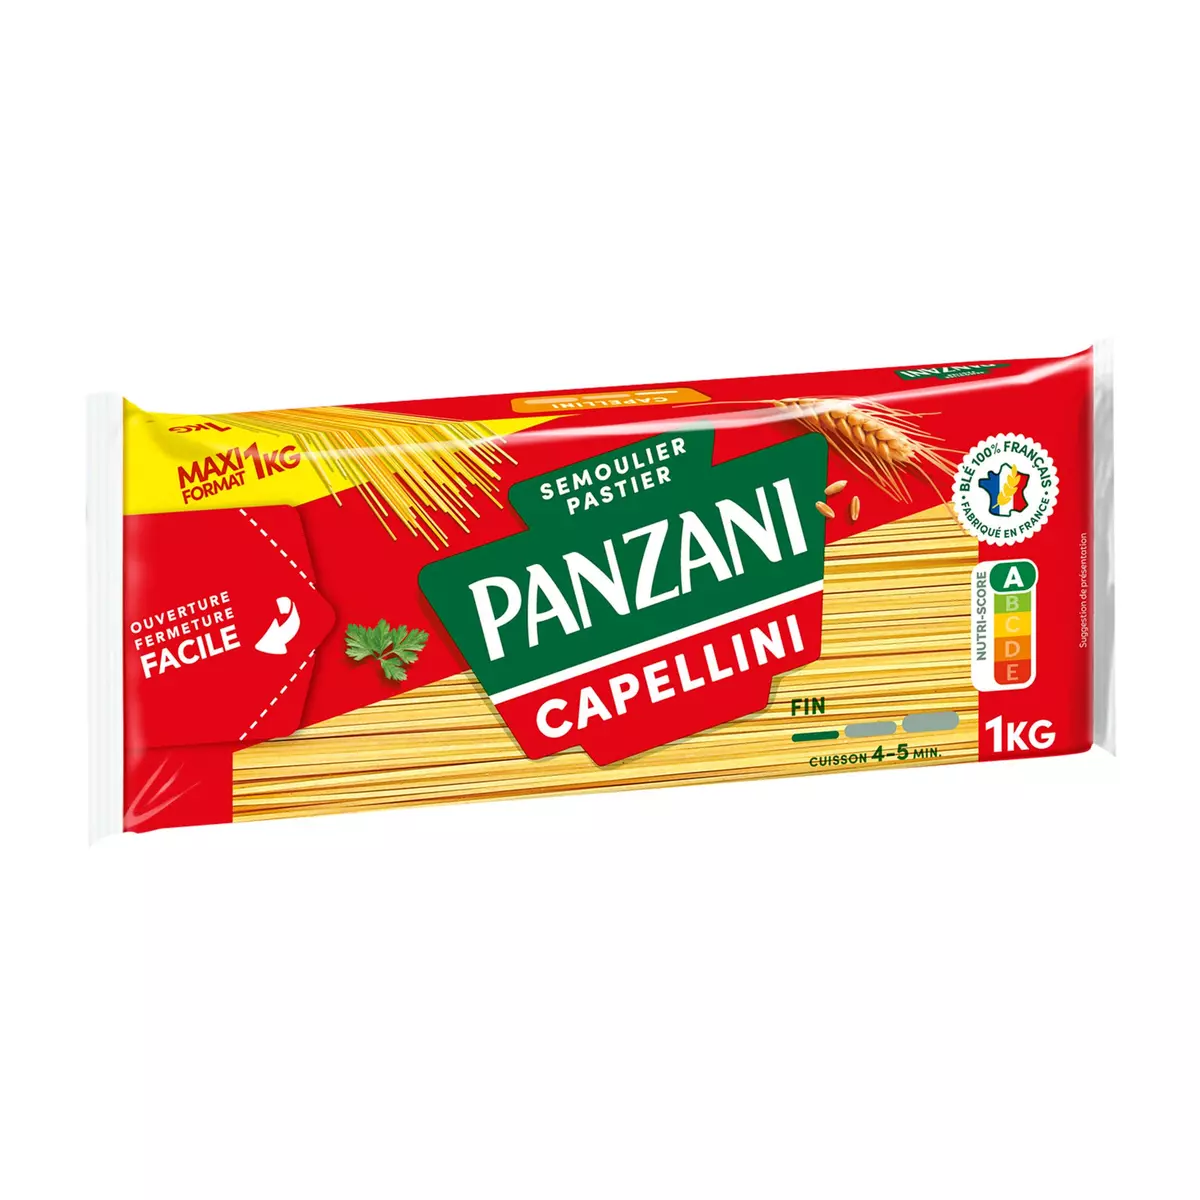 PANZANI Capellini filière blé responsable français maxi format 1kg